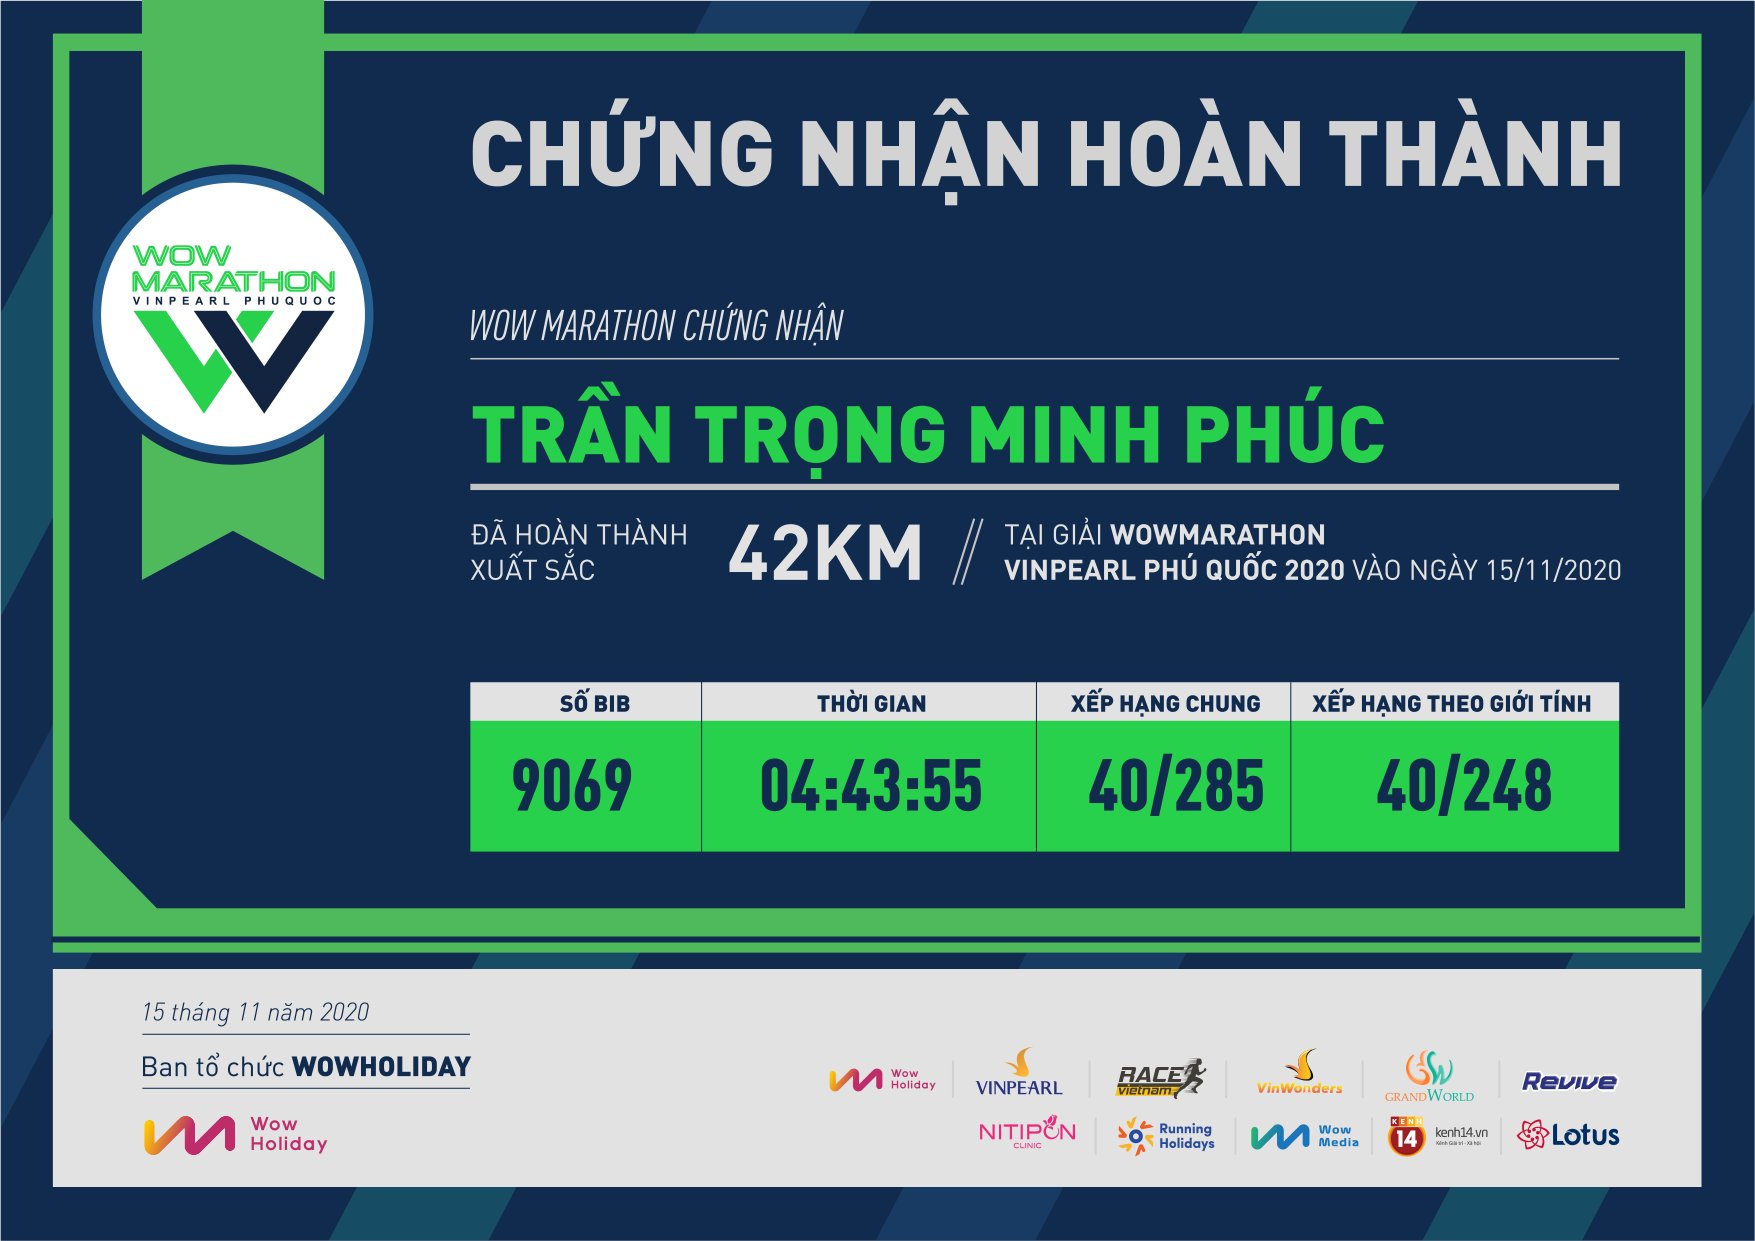 9069 - Trần Trọng Minh Phúc